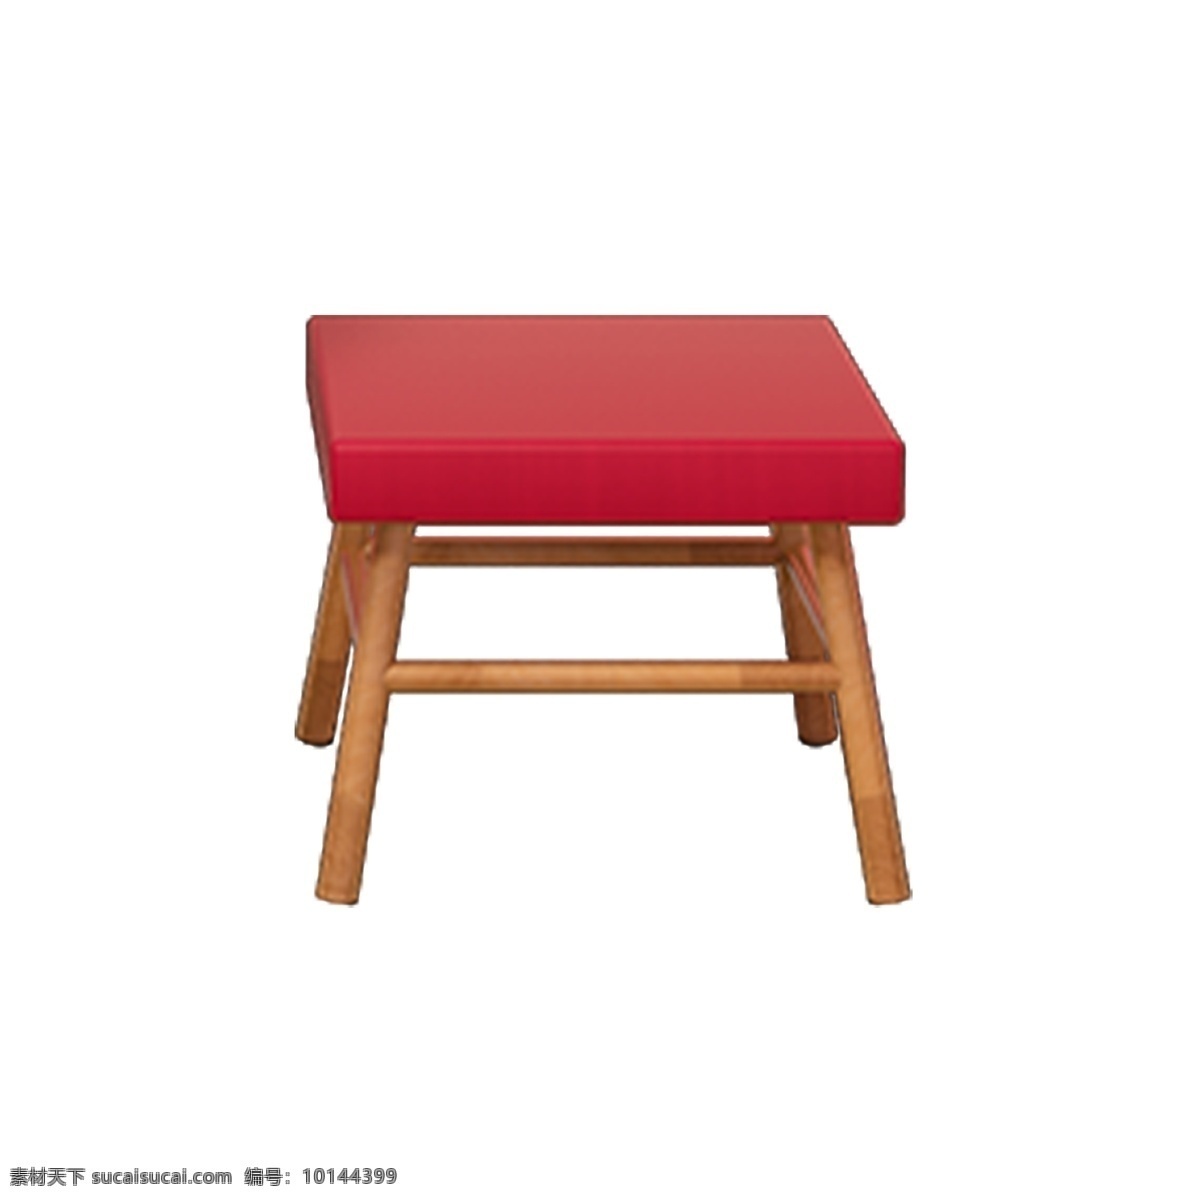 张 红色 小 凳子 小凳子 实木凳子 坐席 桌子 古老 木桌 木制品 木工艺 家庭木凳 四方凳子